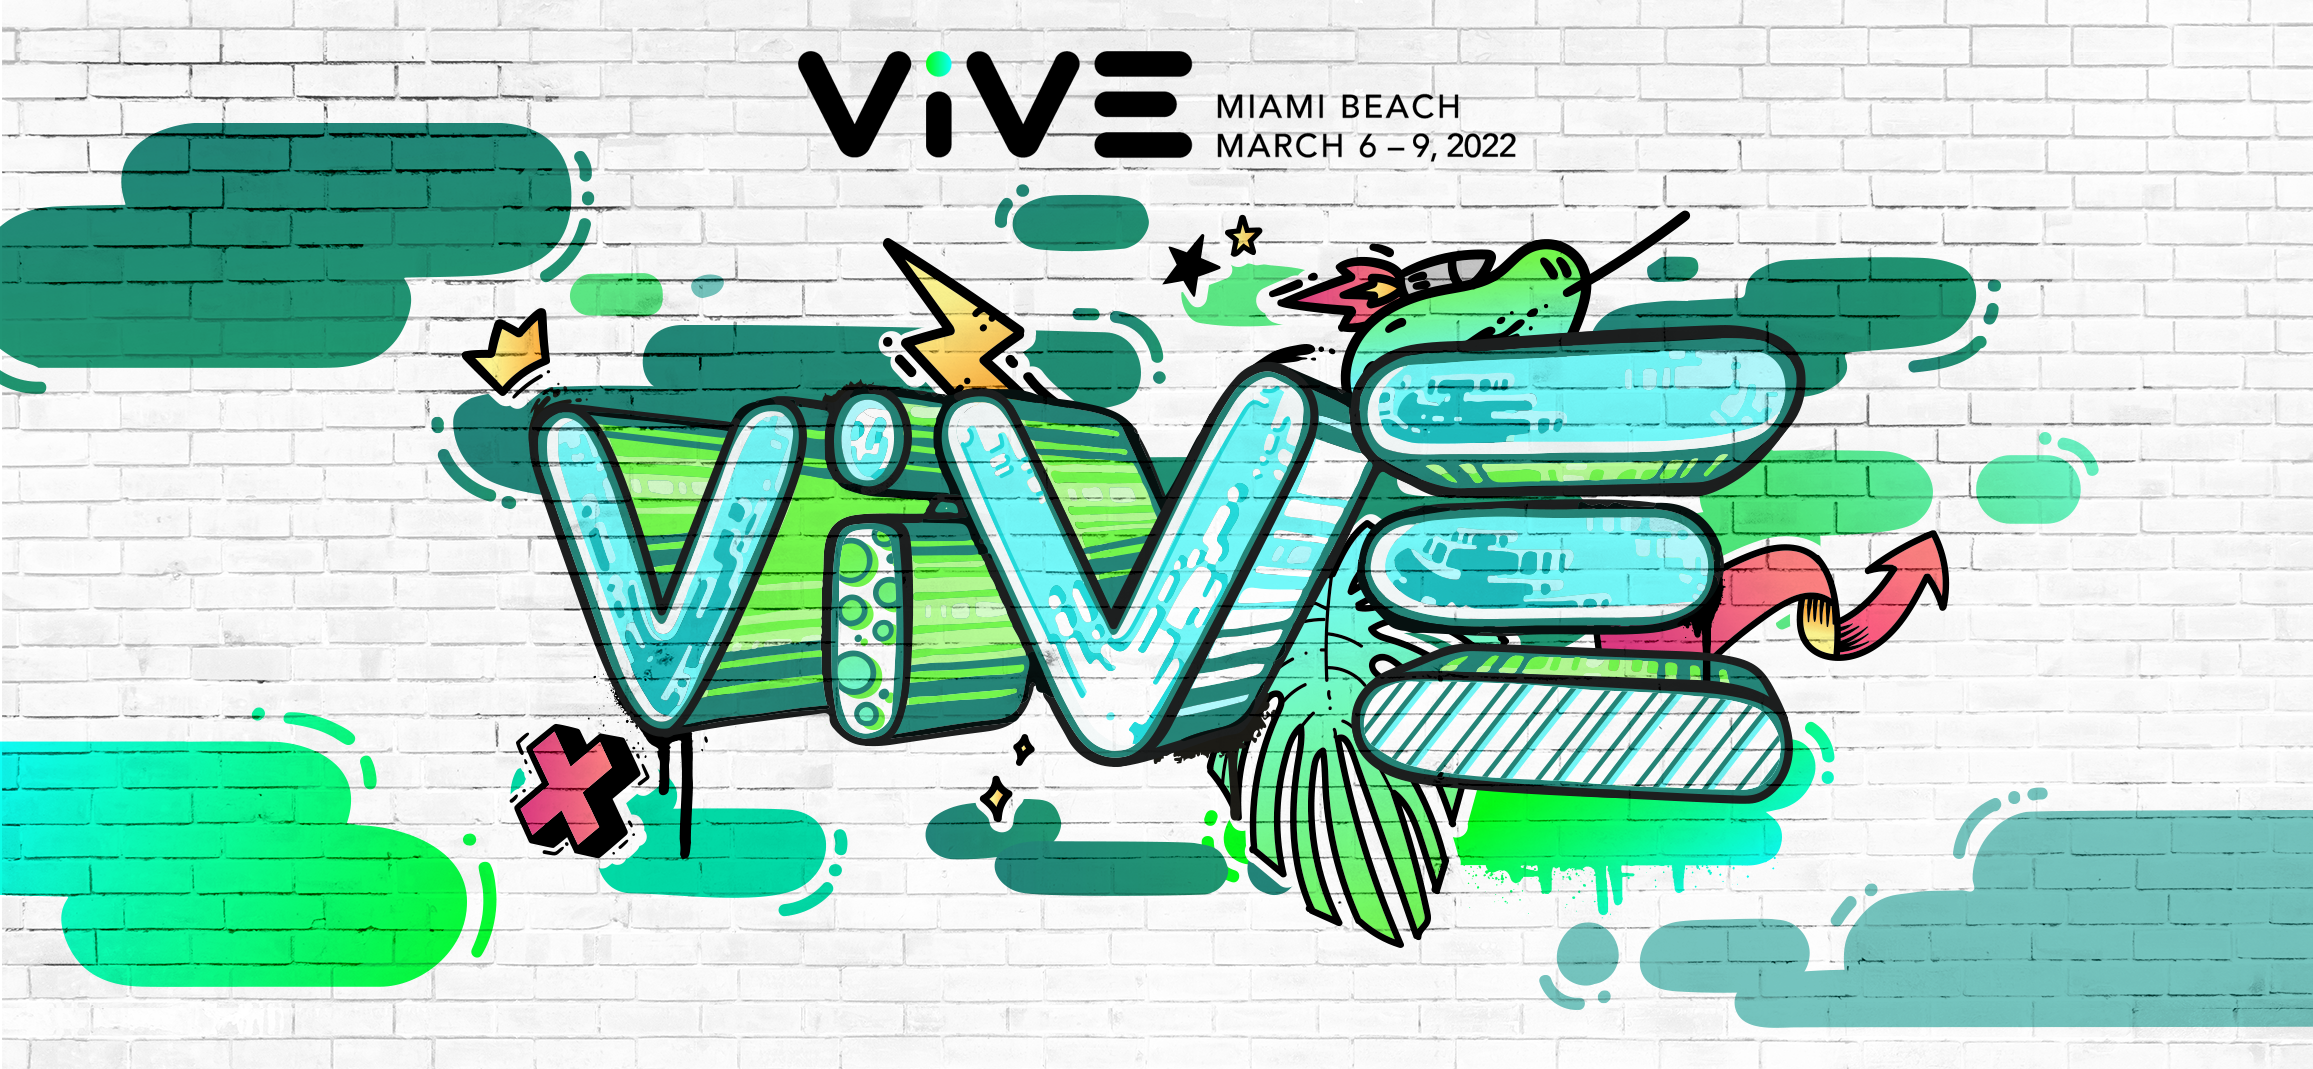 ViVE 2022 | MIAMI BEACH | MARCH 6 - 9, 2022